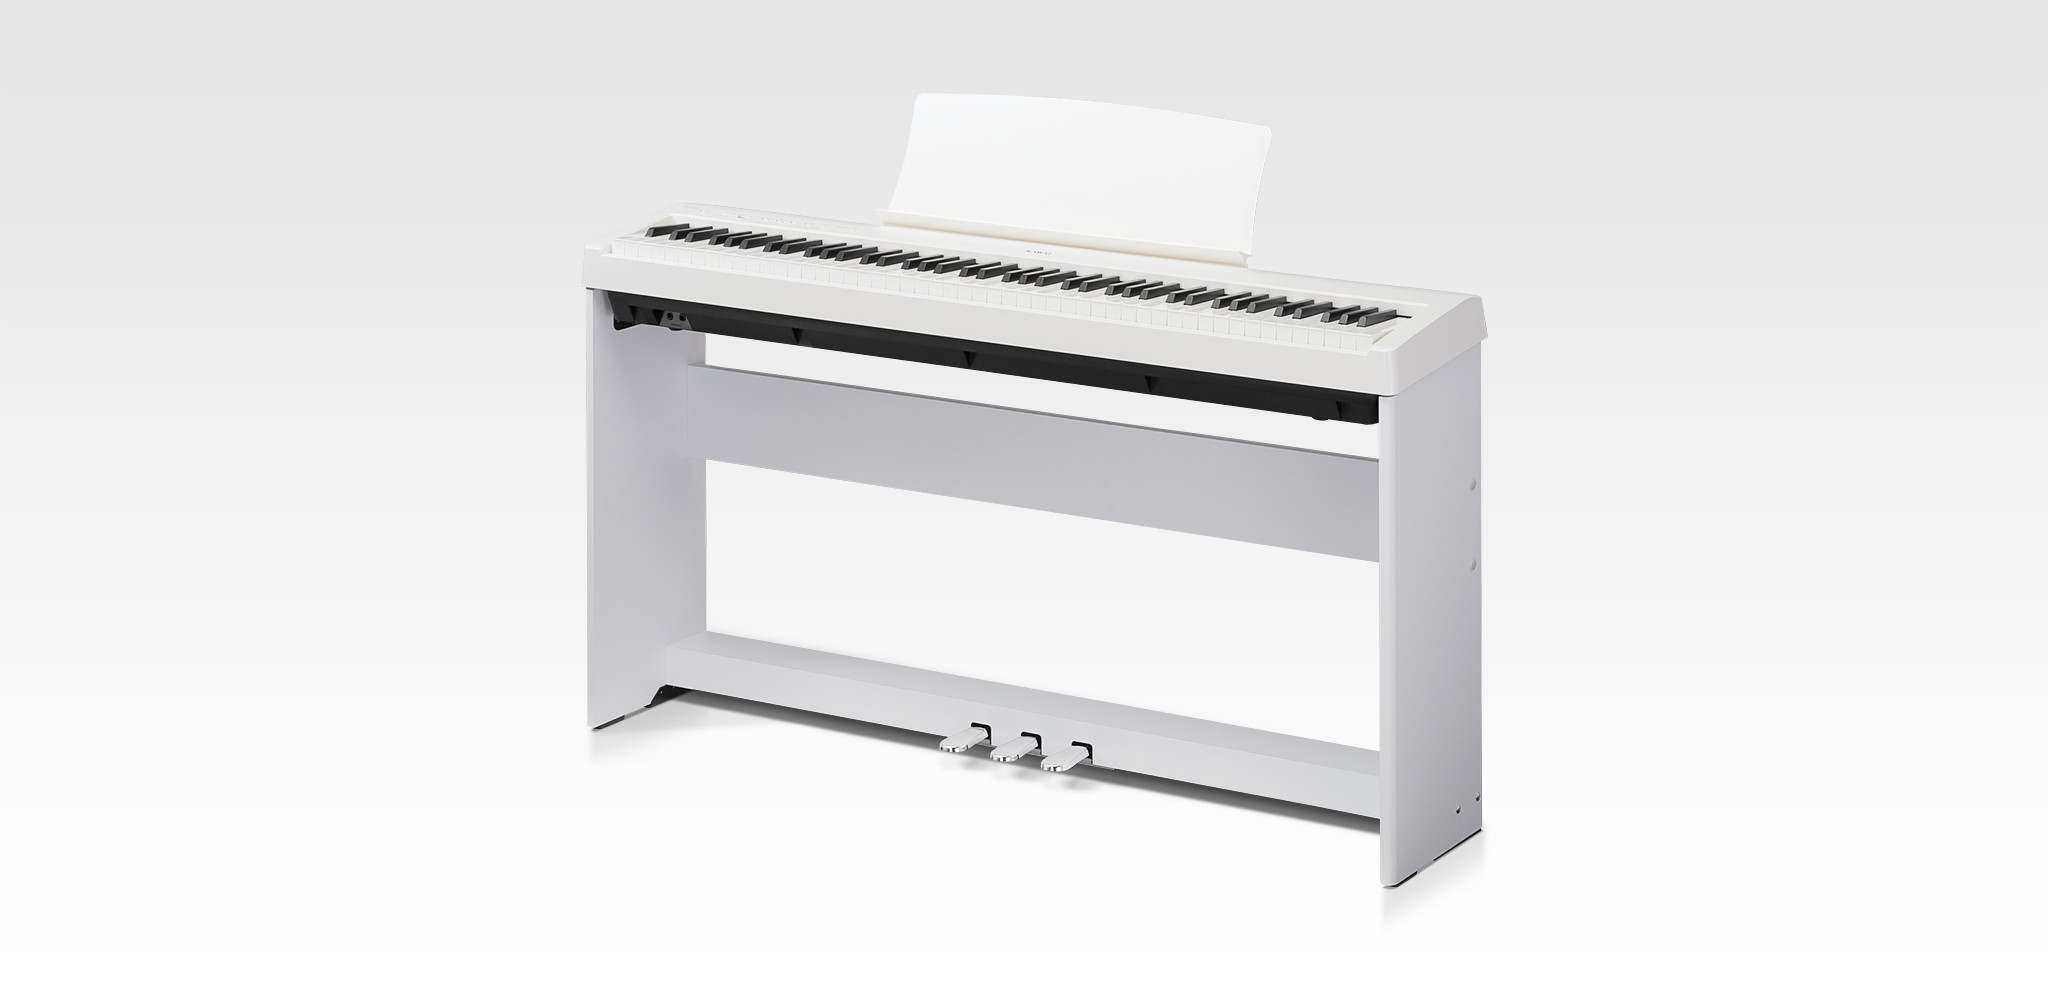 Kawai ES110｜Digital Pianos｜Products｜Kawai Musical Instruments 